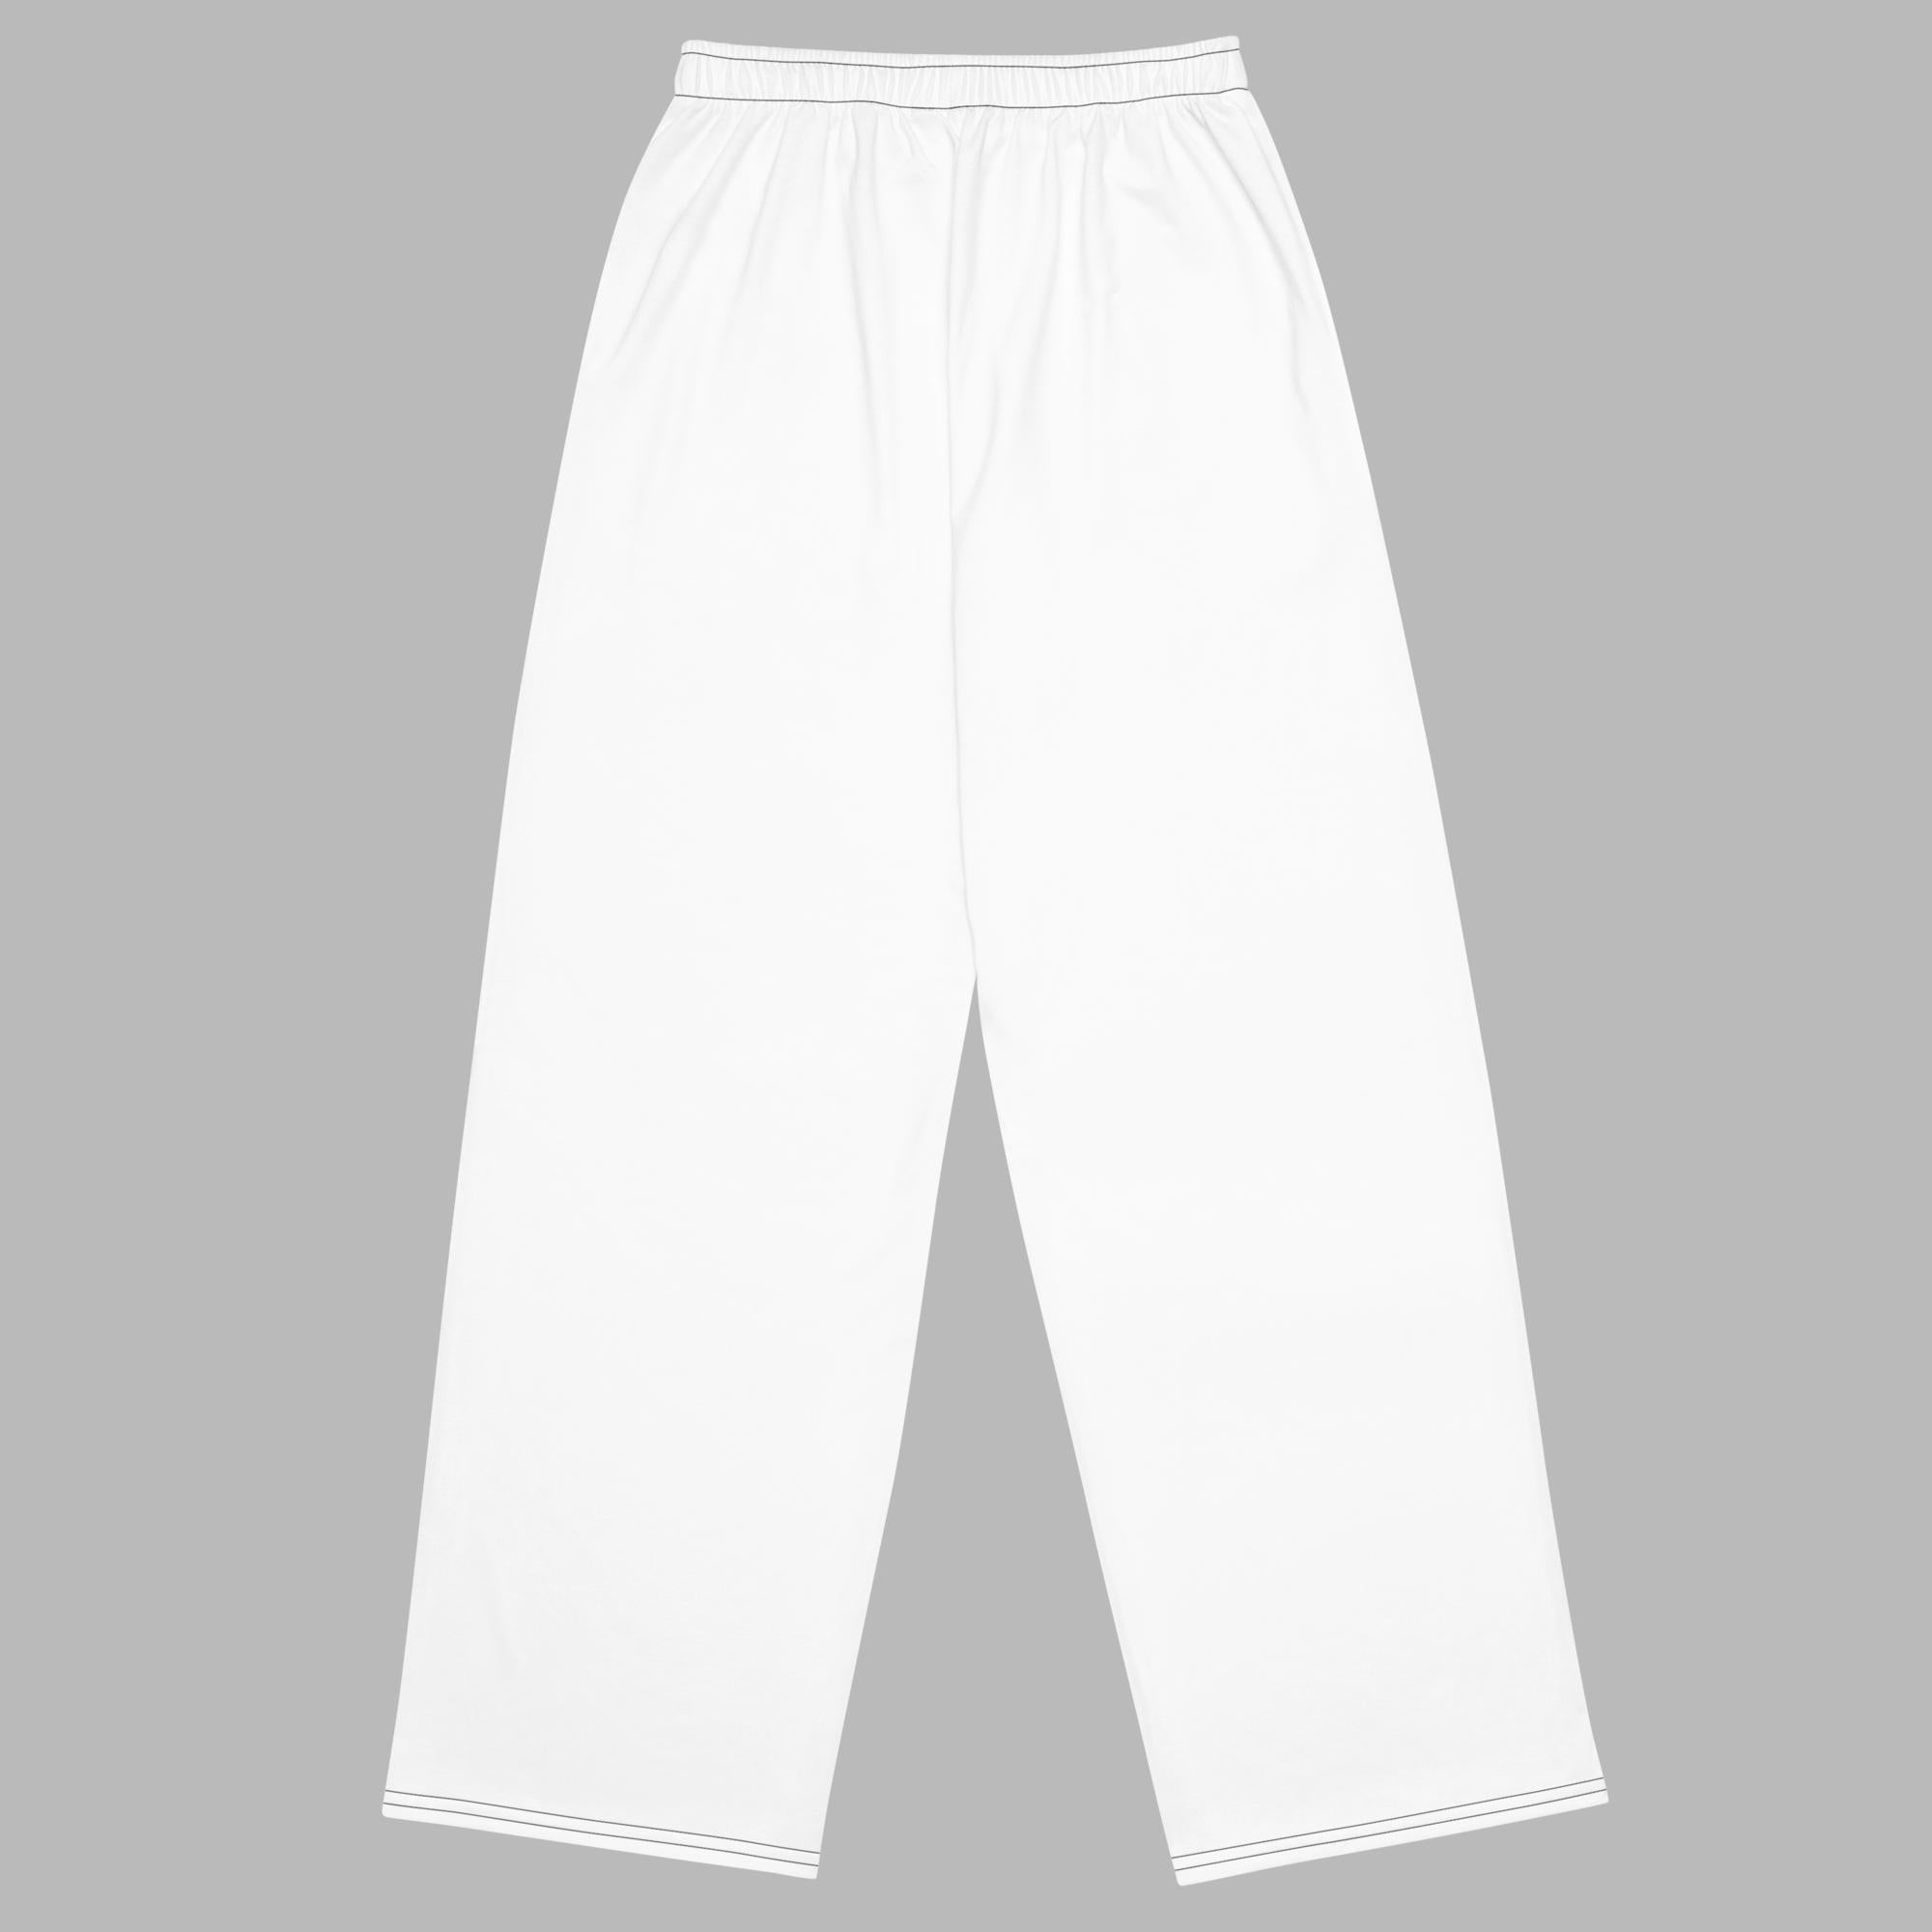 Pantalón ancho unisex - Blanco